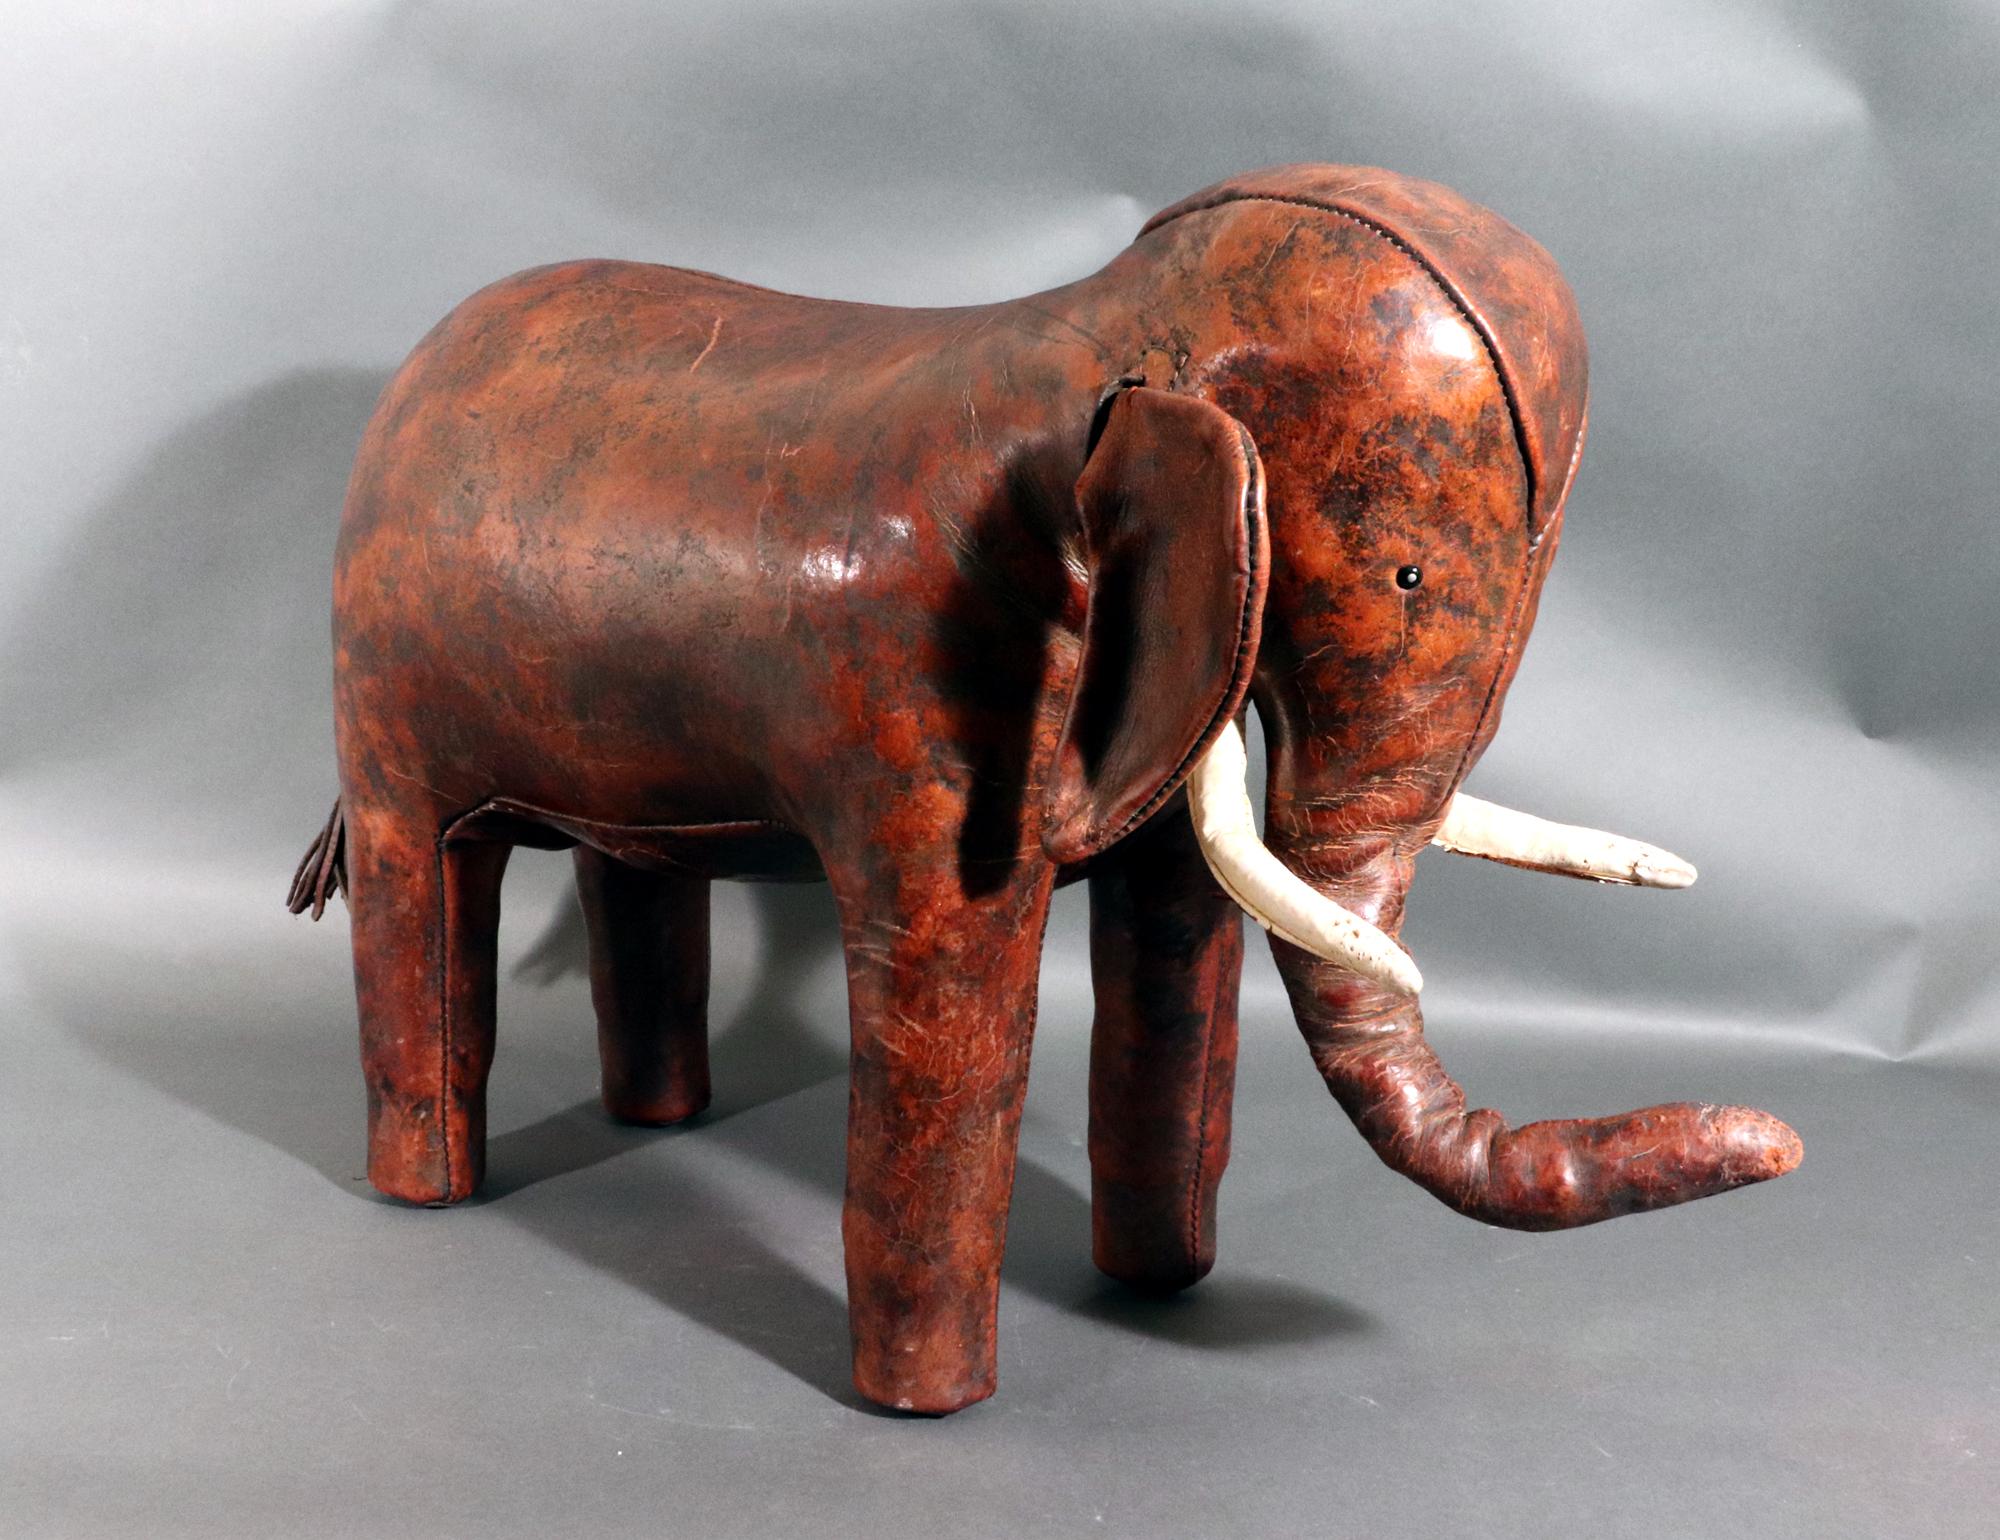 Tabouret ou ottoman vintage en cuir d'éléphant,
Dmitri Omersa,
1960s

Le pouf en cuir est conçu en forme d'éléphant dans un beau cuir.  Les défenses sont en cuir blanc et le corps est brun.  L'état est excellent avec une patine typique de soixante